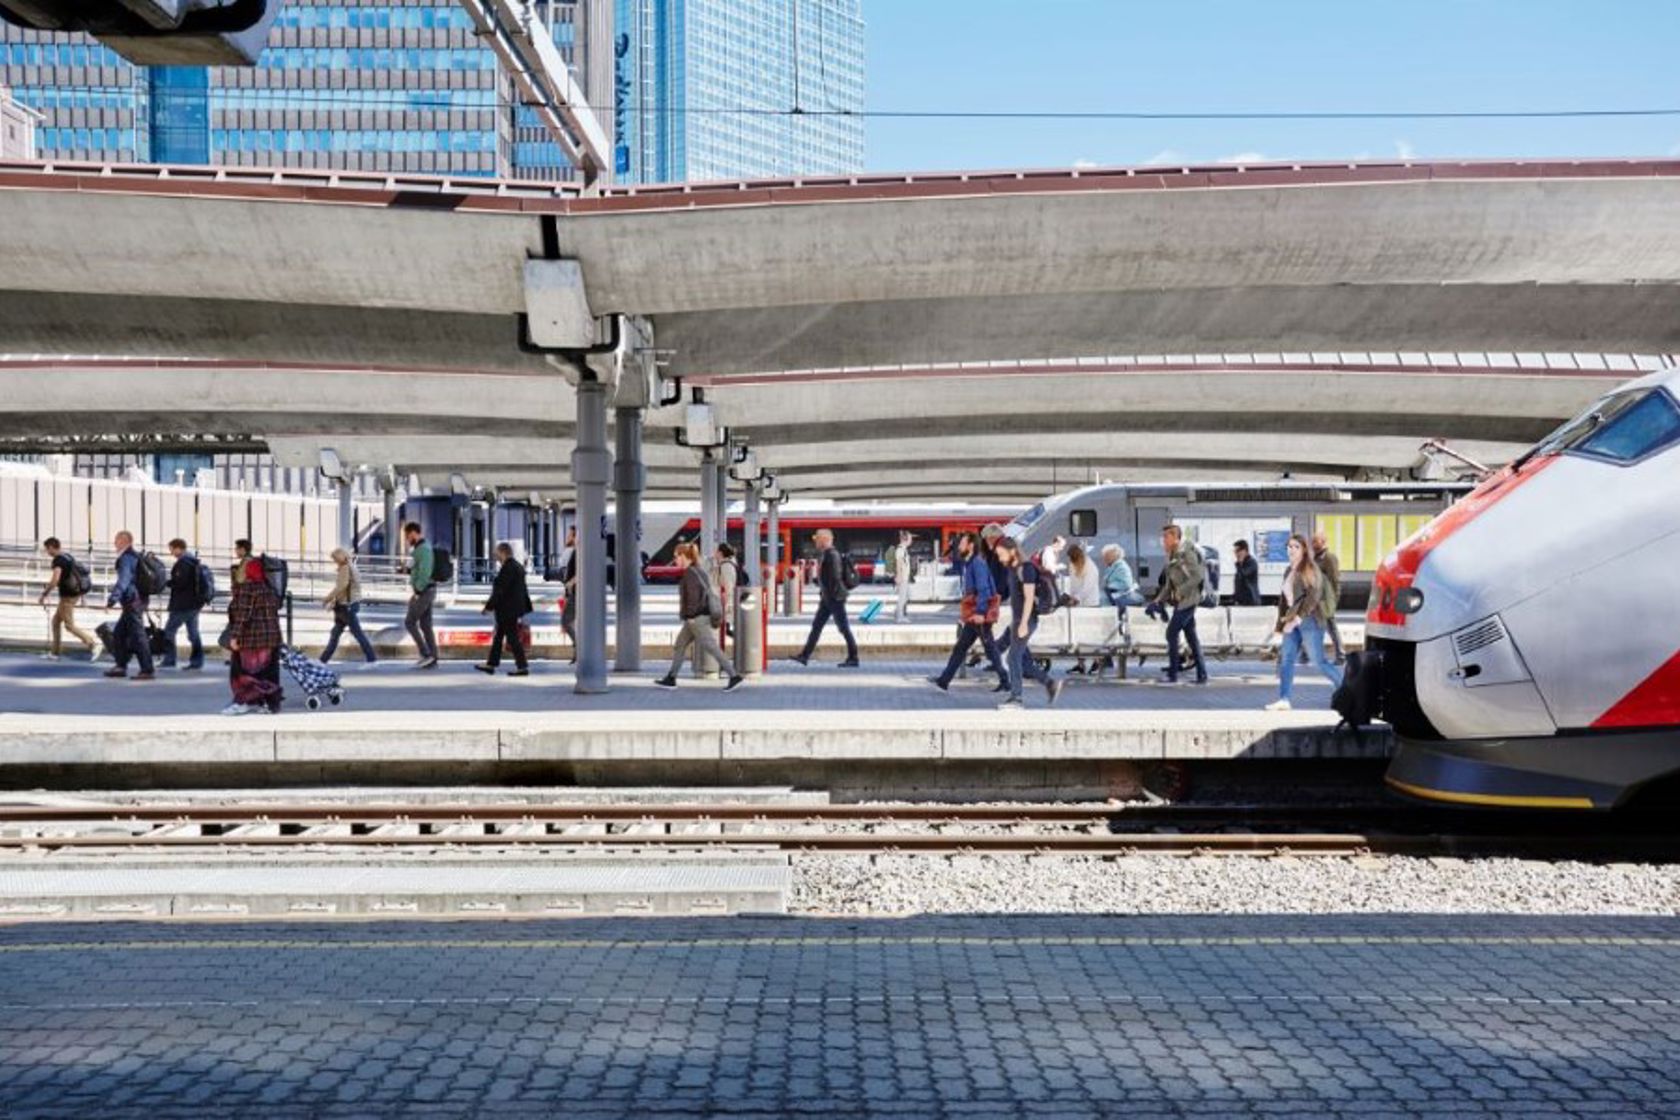 Passasjerer går av et tog og på en plattform på en jernbanestasjon